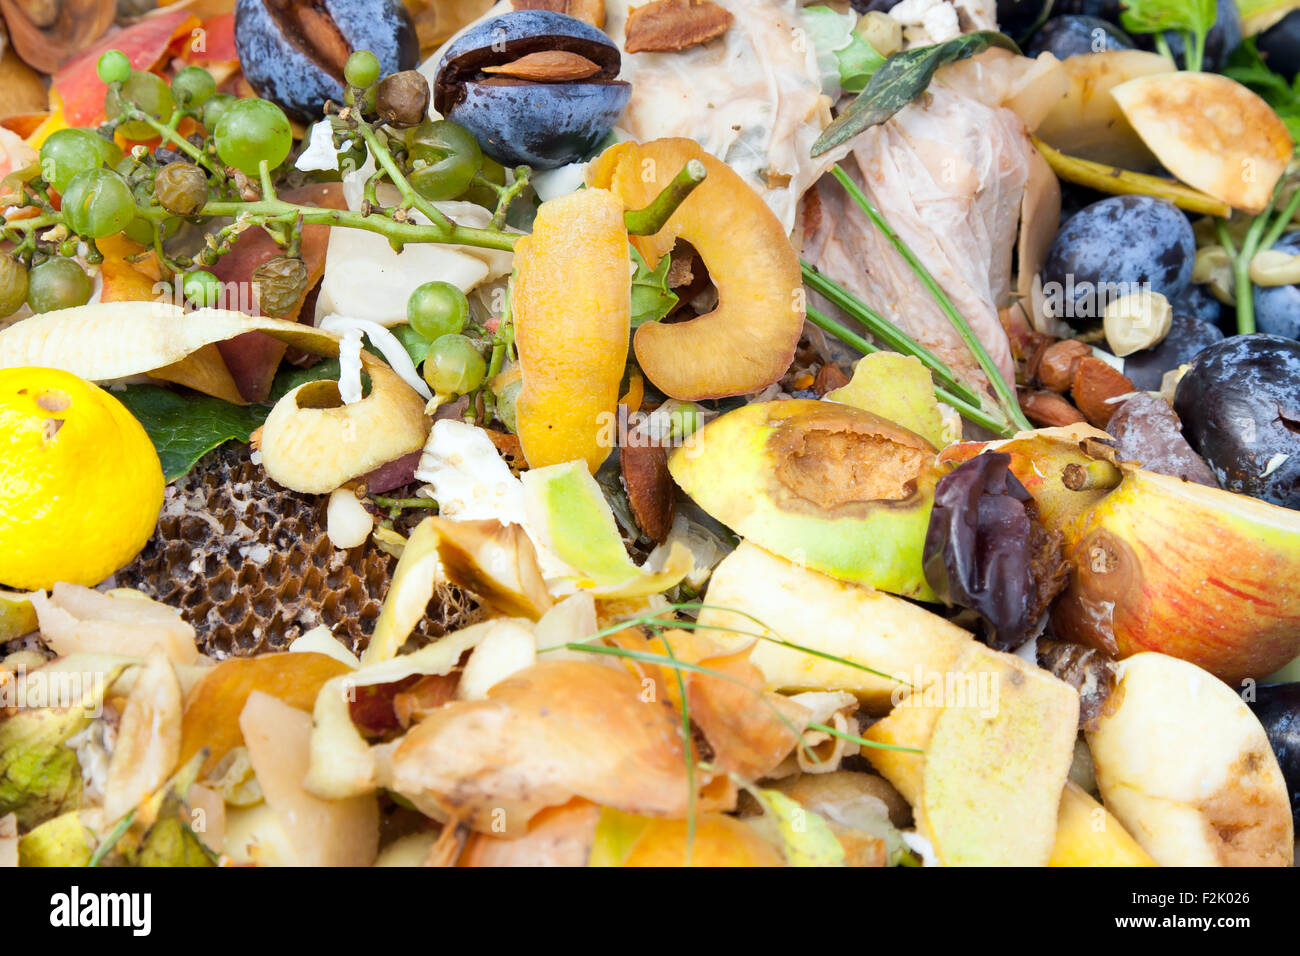 Kompost im Garten. Kompostierung Haufen verwesender Küche Obst und Gemüse Fetzen Stockfoto